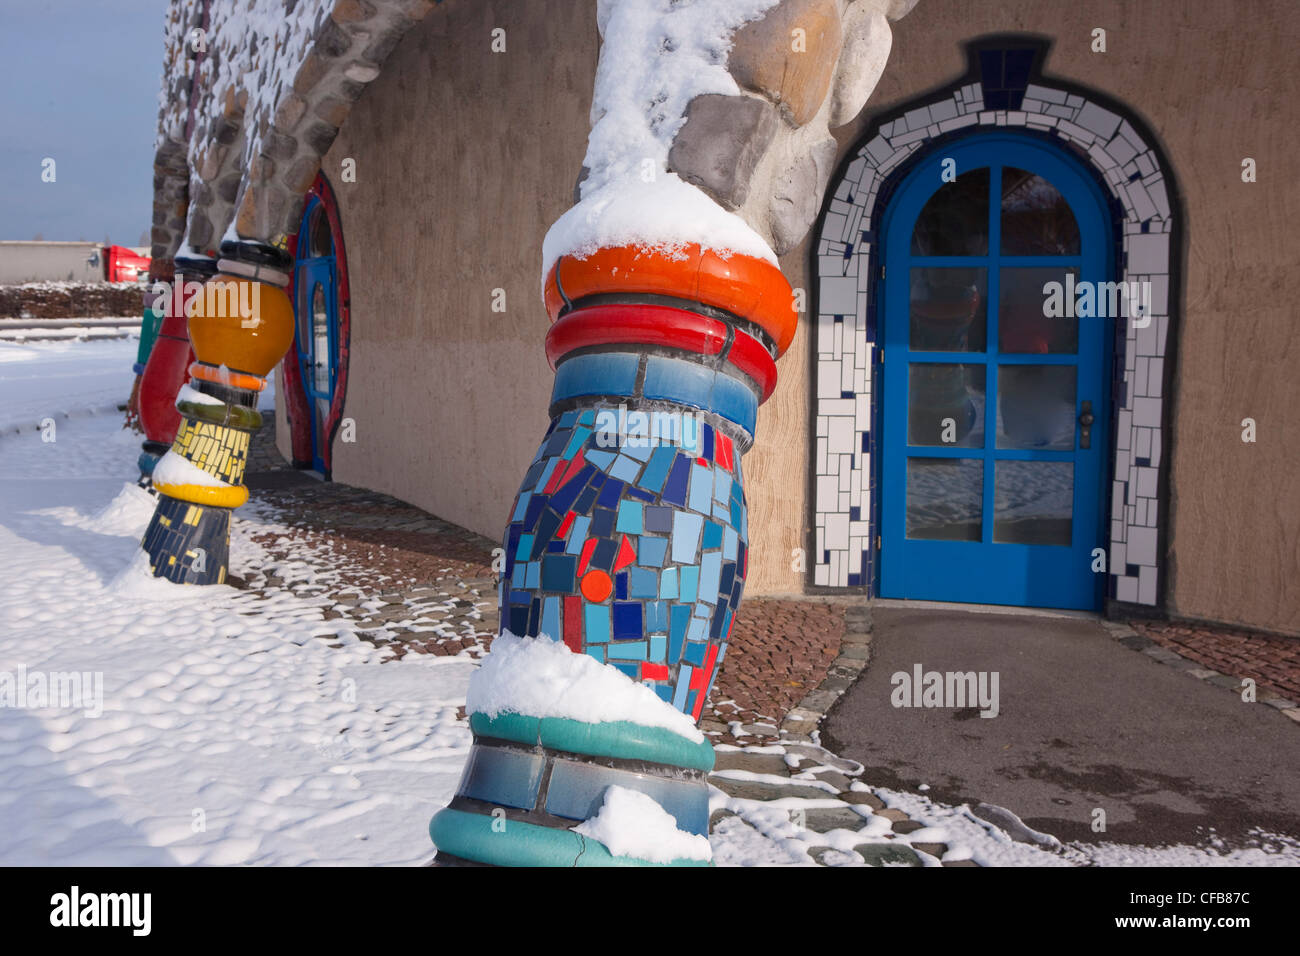 Inverno, la neve, del cantone di San Gallo, San Gallo, Svizzera, Europa, la costruzione, la costruzione, la cultura, Hundertwasser, mercato coperto, Foto Stock